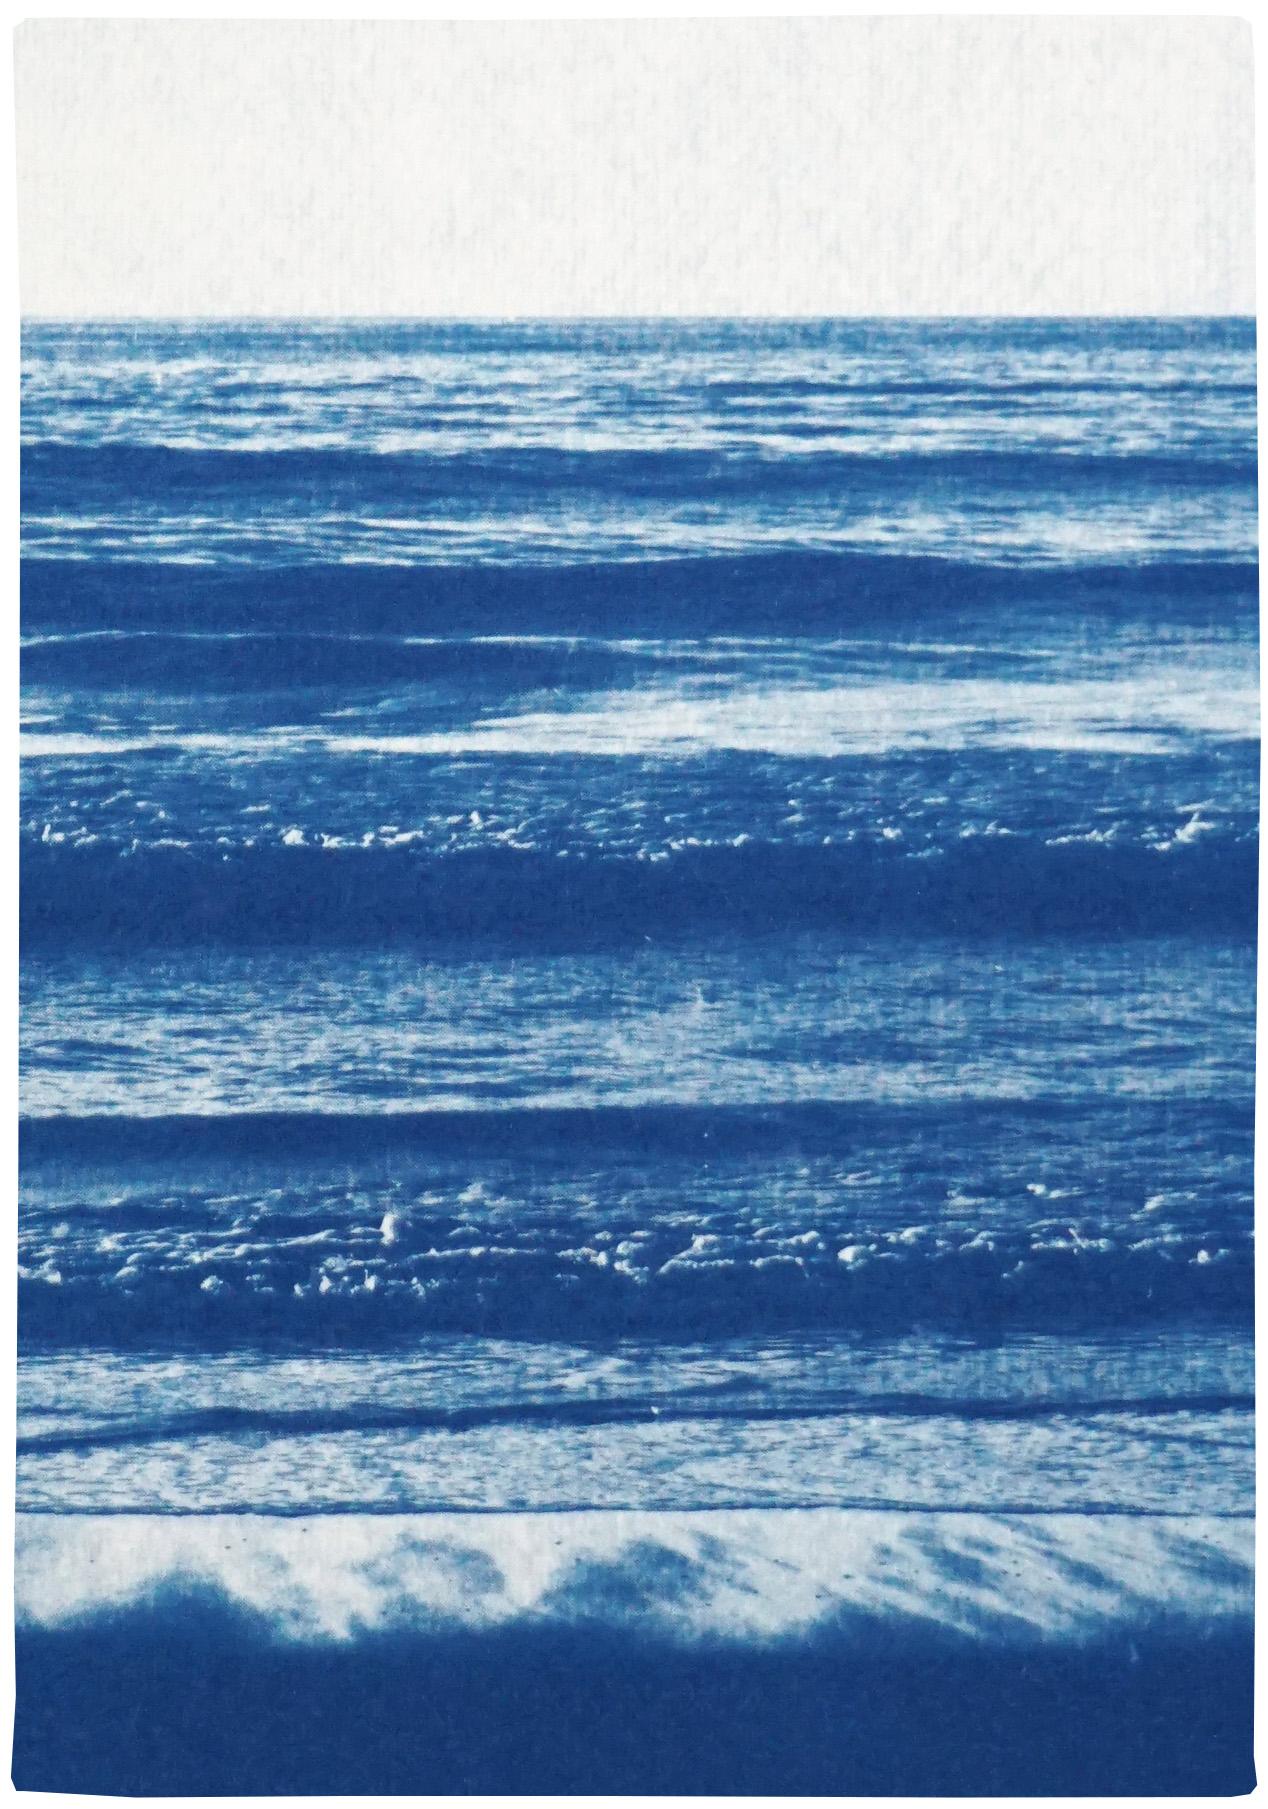 Cette série de triptyques en cyanotype met en valeur la beauté des scènes de la nature, notamment des plages et des océans magnifiques, ainsi que les textures complexes de l'eau, des forêts et des cieux. Ces triptyques sont de grandes pièces qui